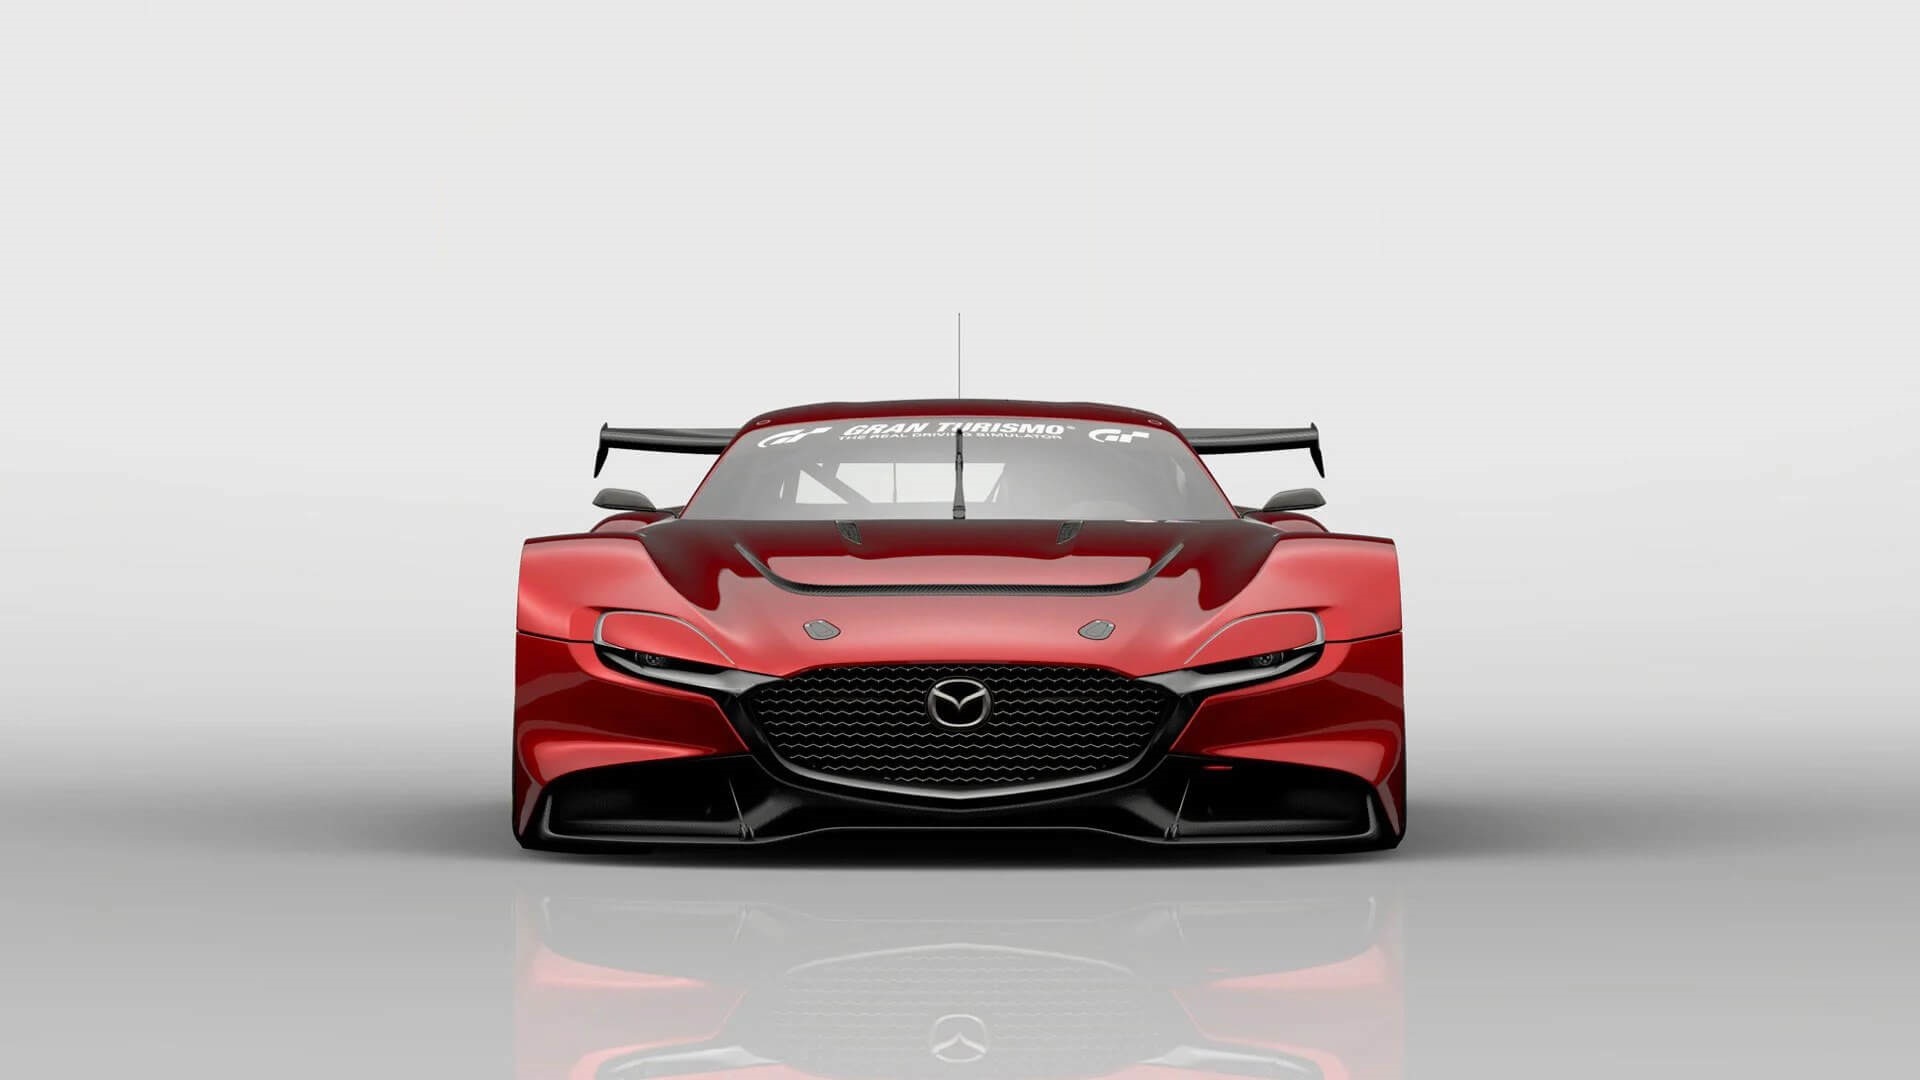 Mazda Rx-Vision Wallpapers